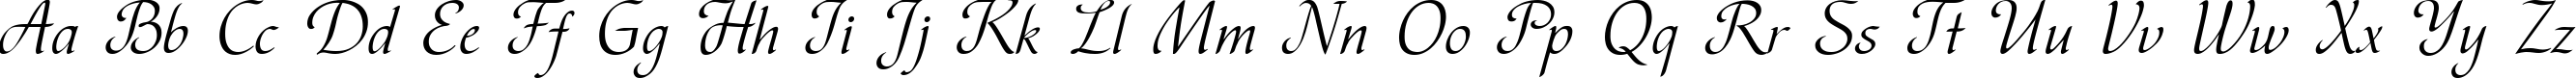 Пример написания английского алфавита шрифтом Vesna